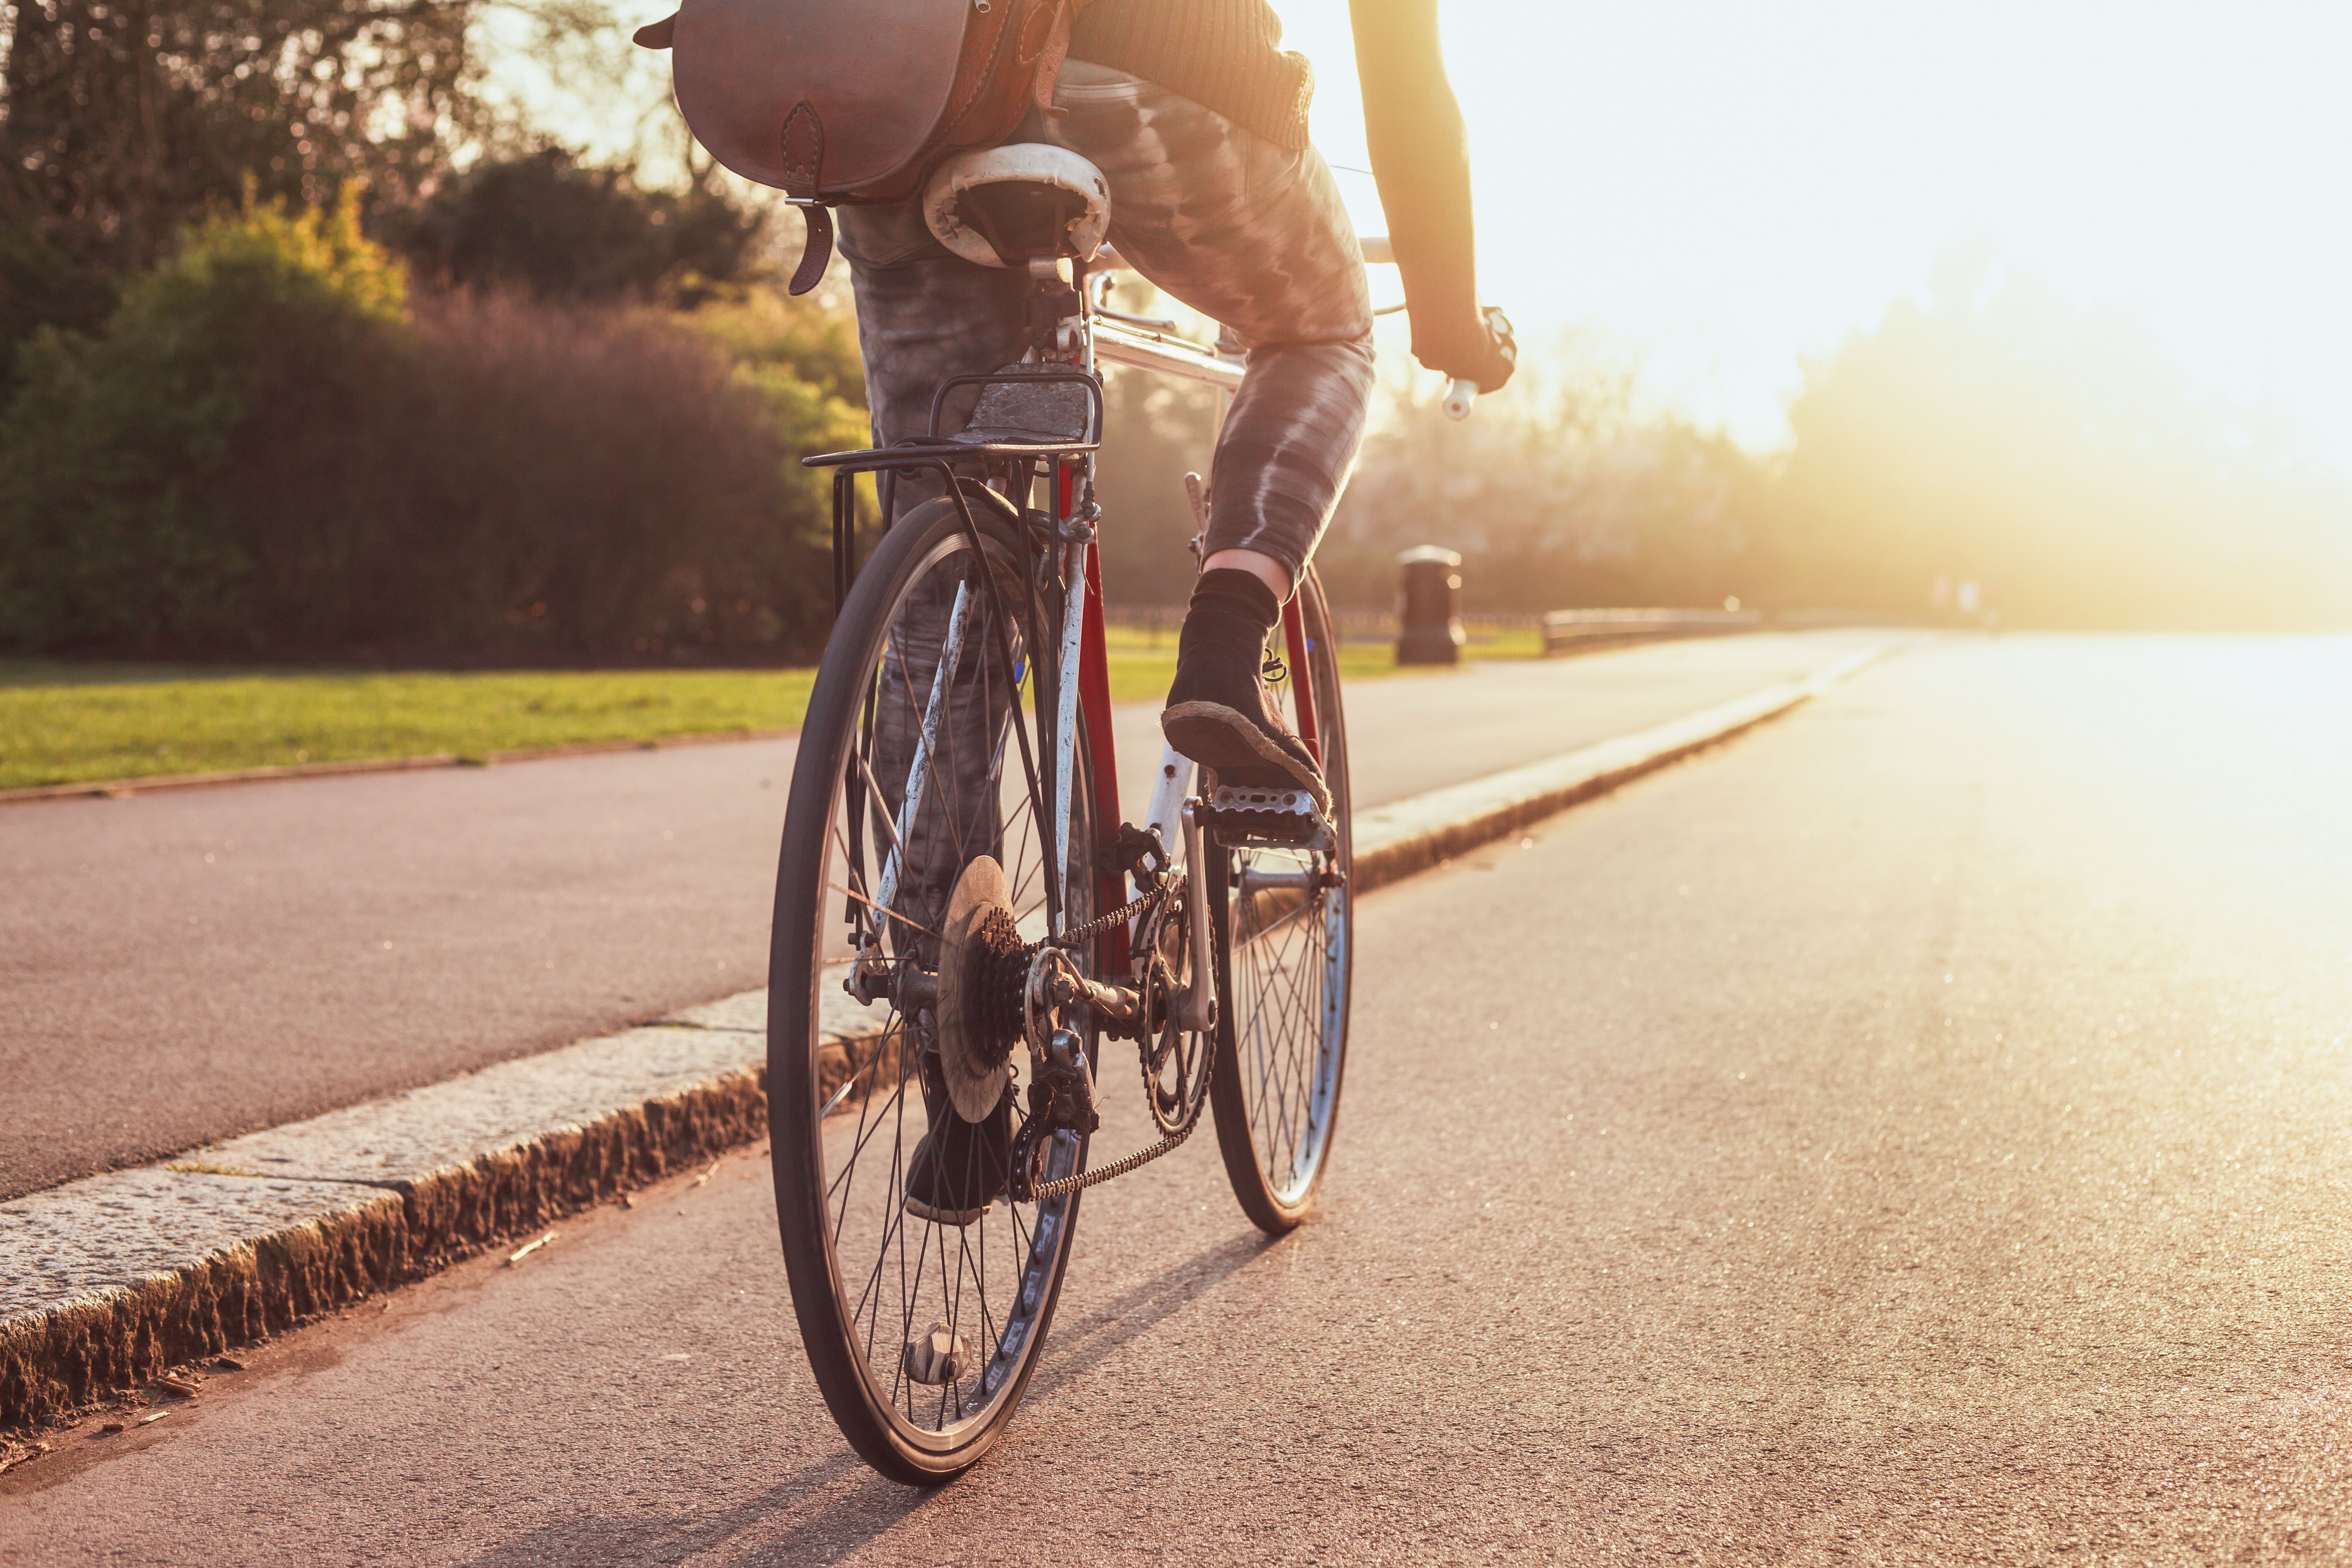 Persoon op fiets fietst door een park met zon op voorgrond